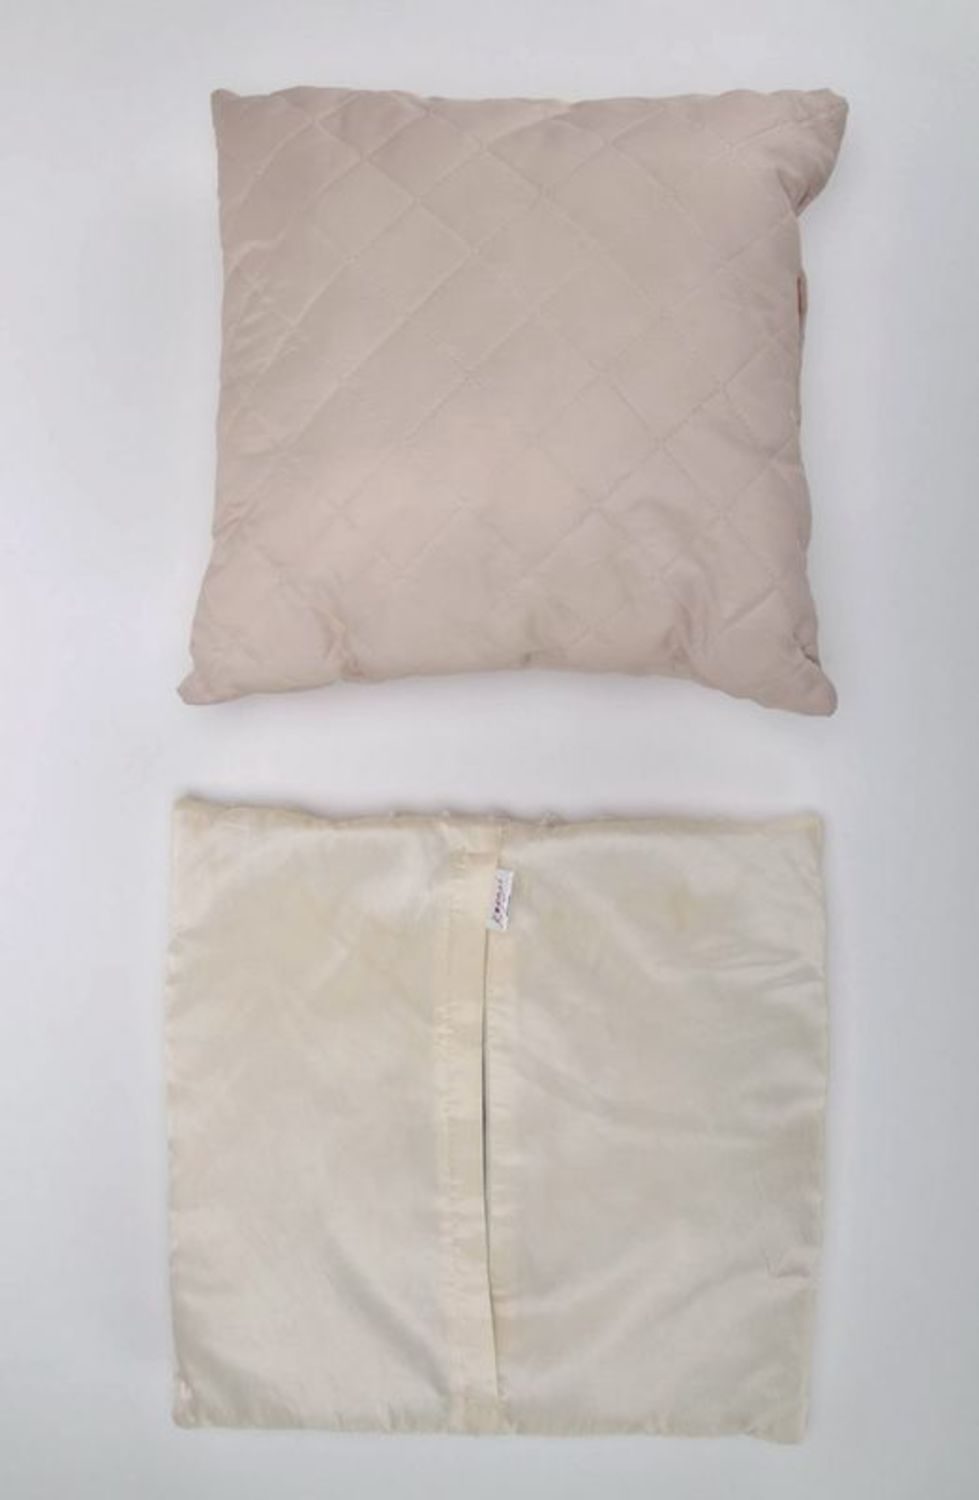 La almohada decorativa de plumón sintético. foto 3